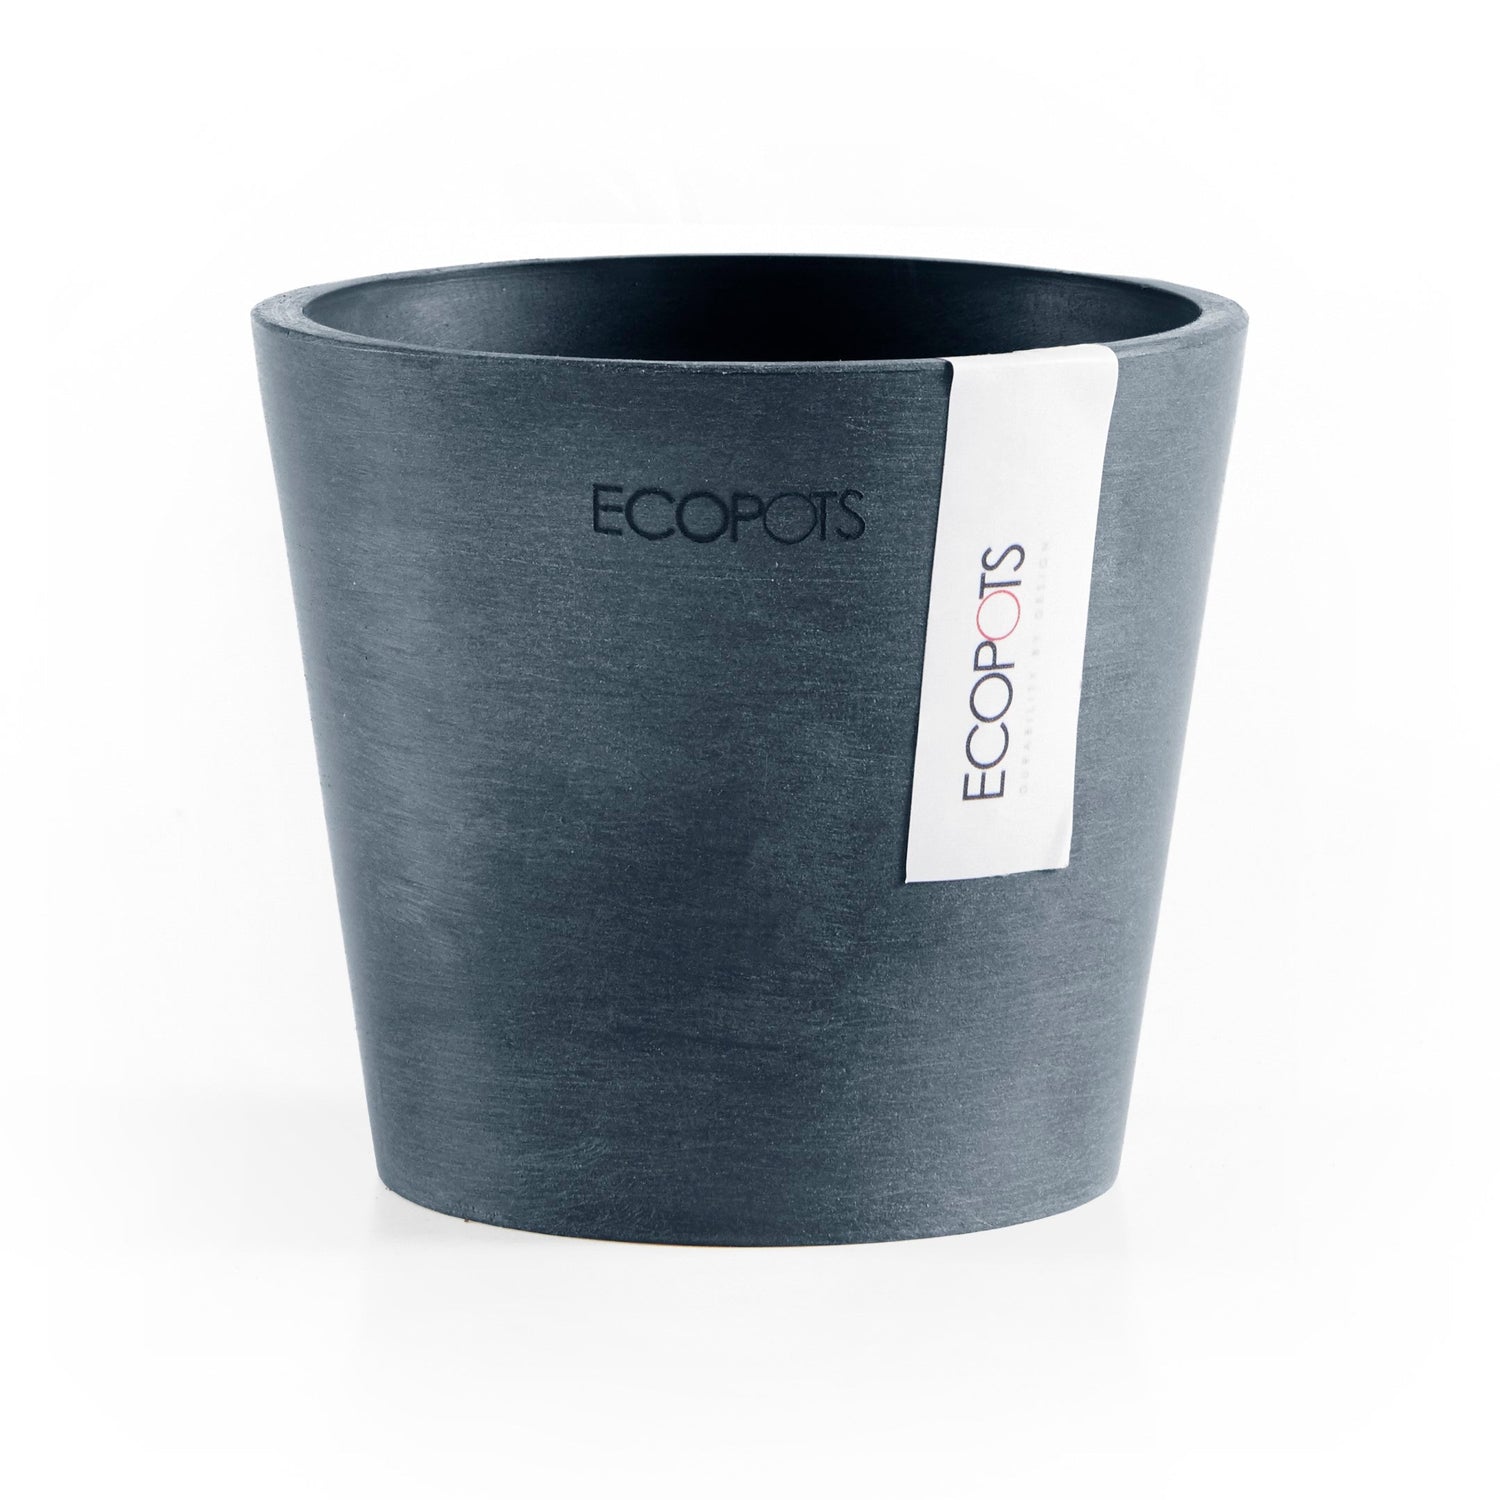 Kukkaruukku - Ecopots - Amsterdam 10,5cm tummansininen - Ecopotskauppa - Uuden aikakauden kukkaruukku